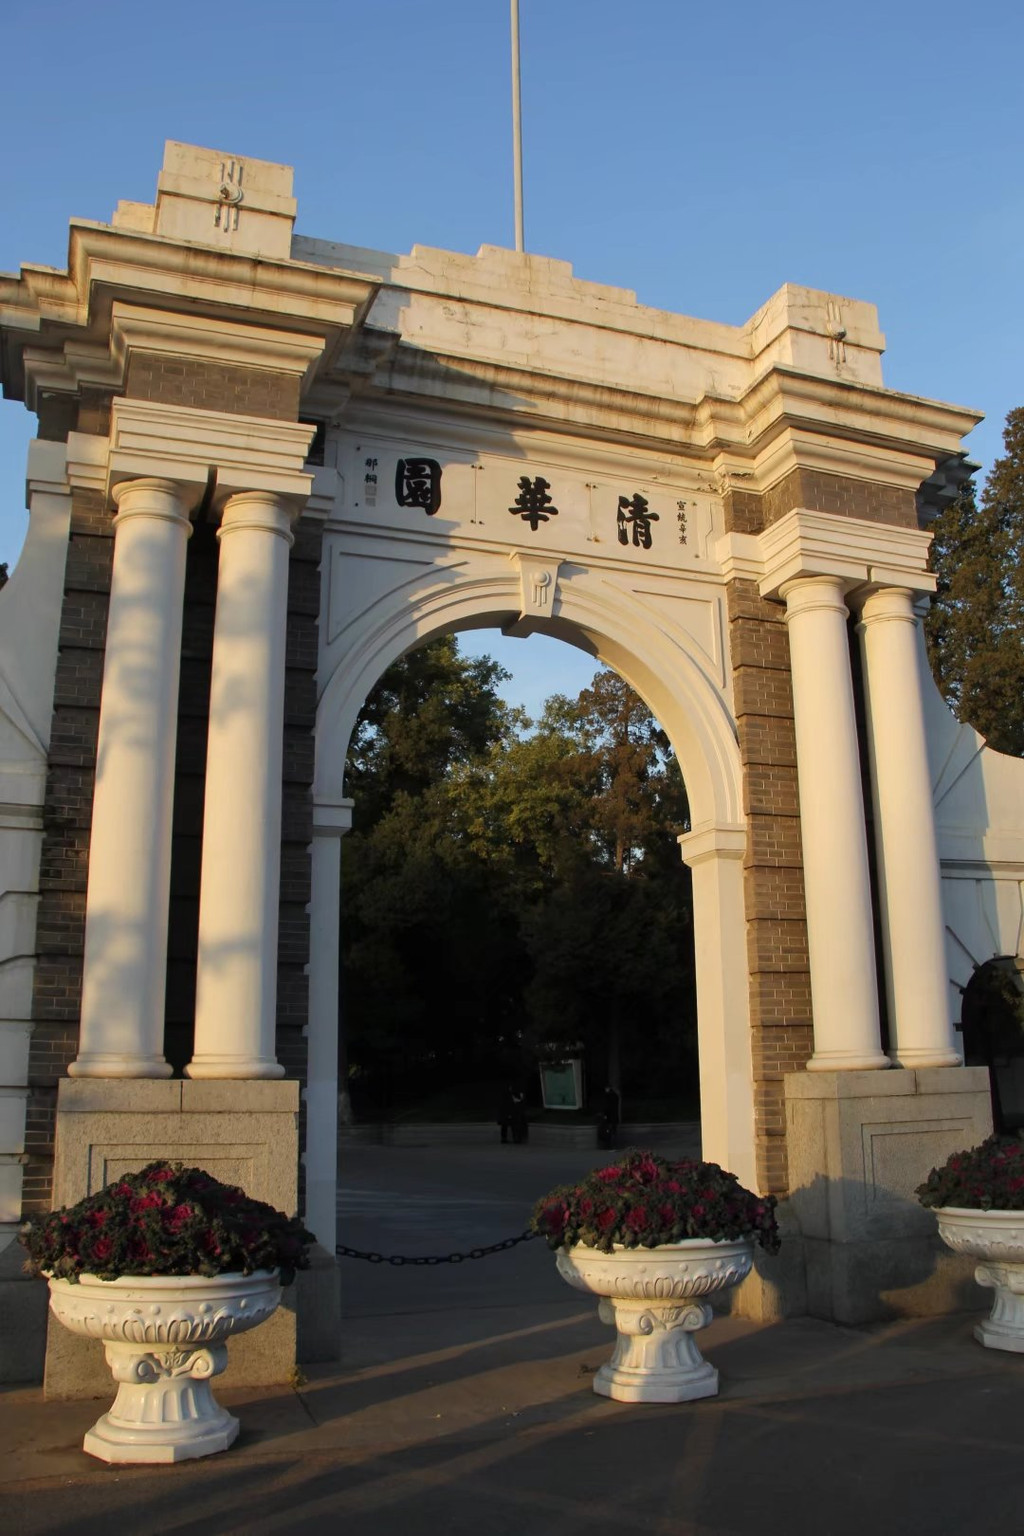 我想很多人对清华大学的印象就是这个校门吧,俗称